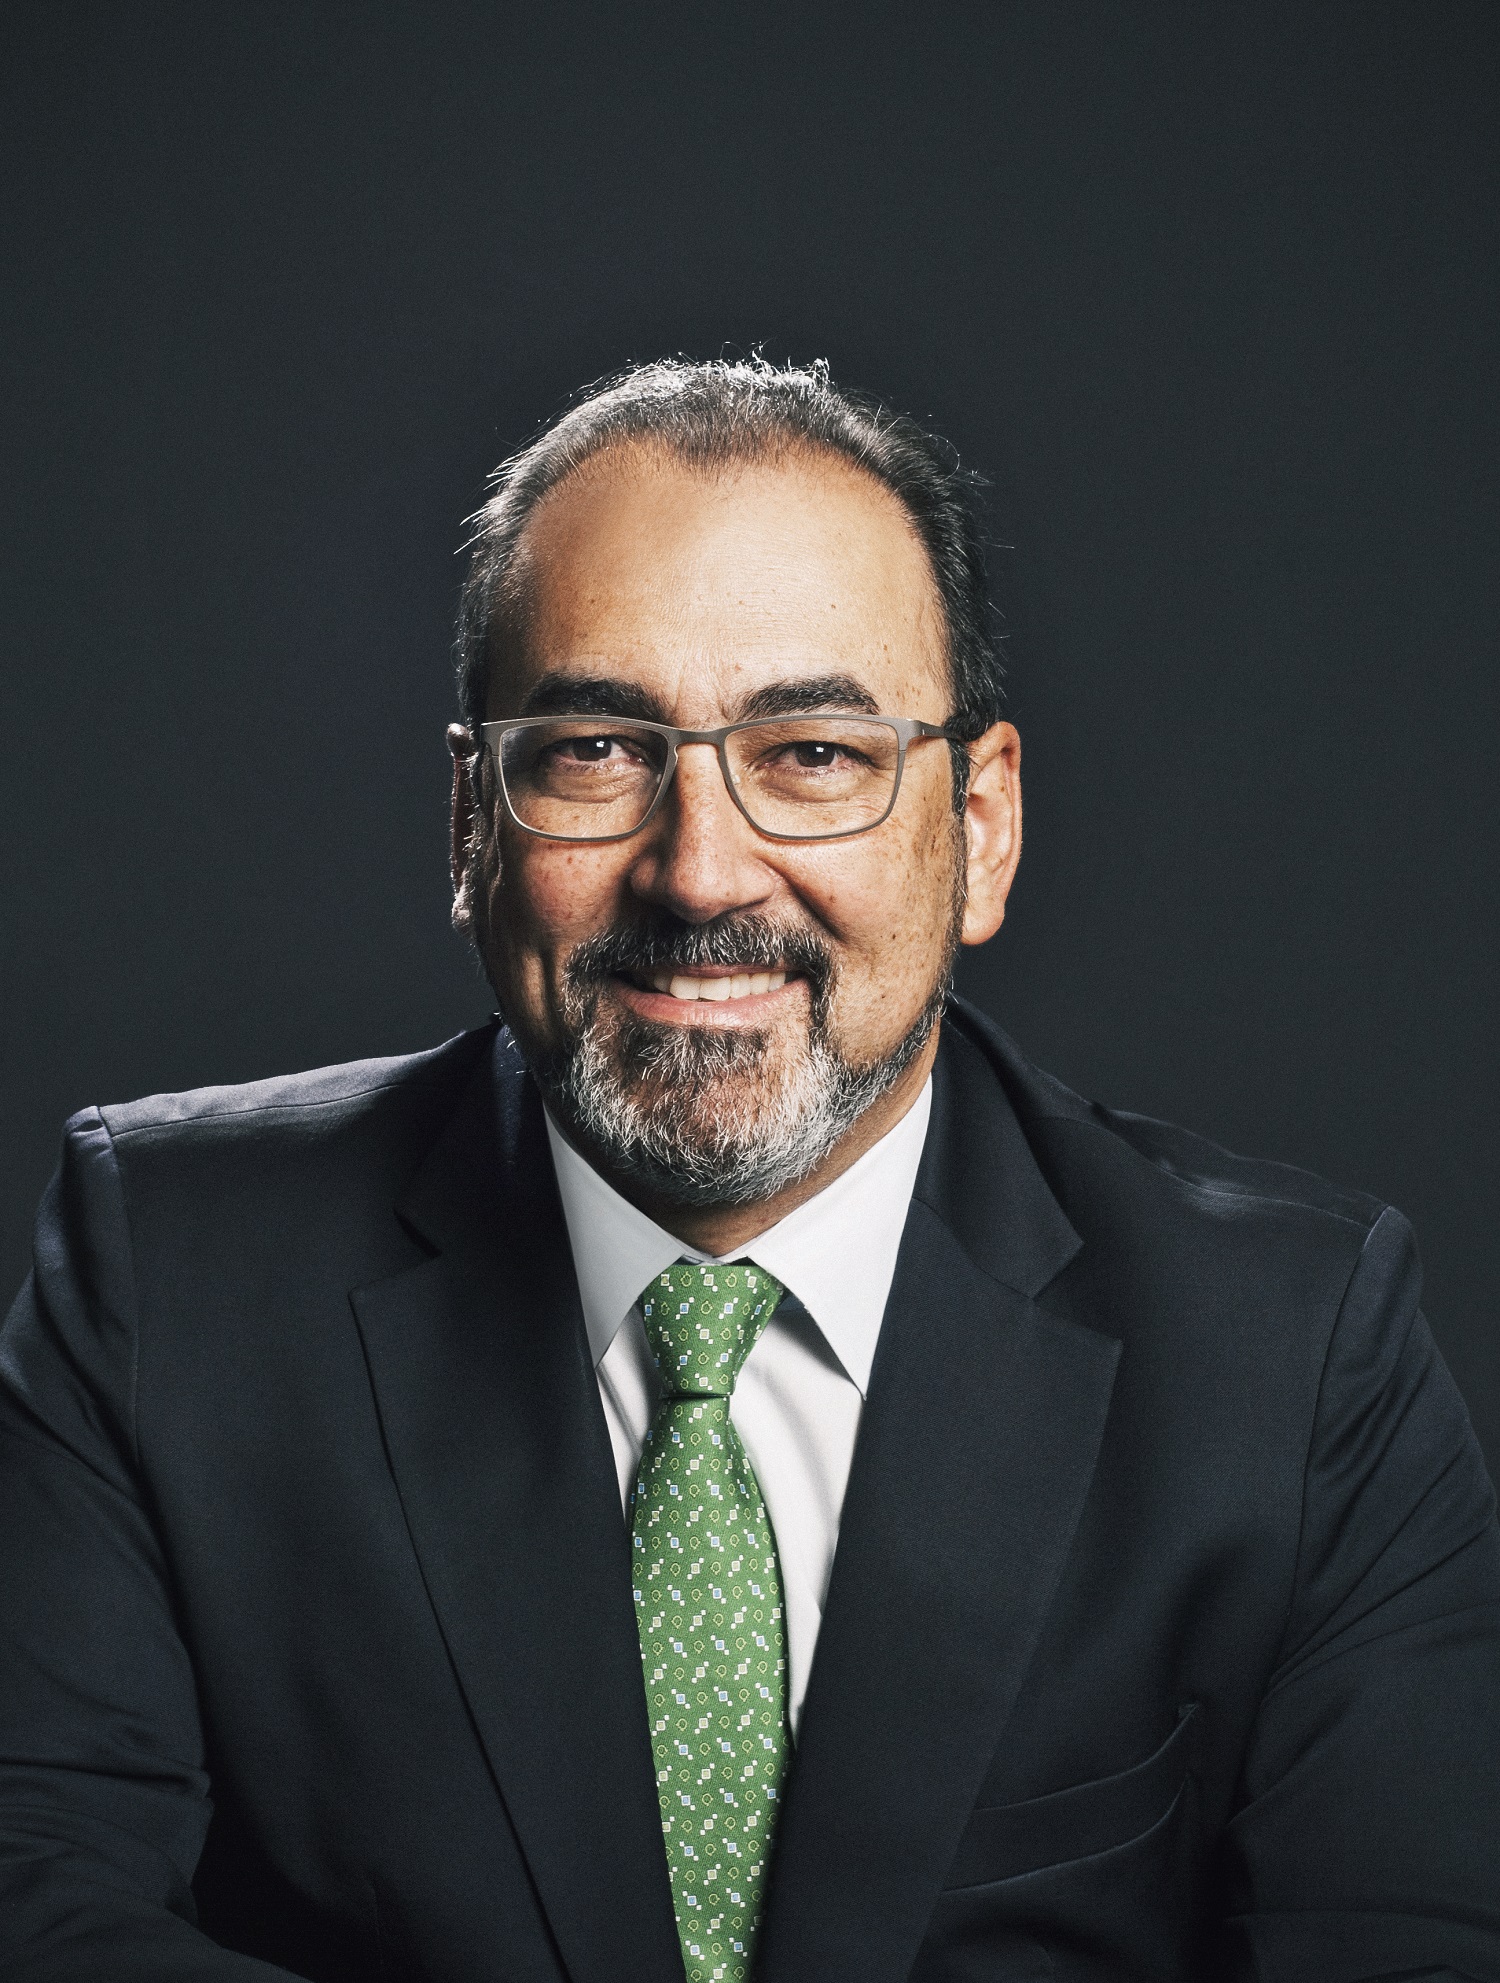 Mr. Sergio Díaz-Granados